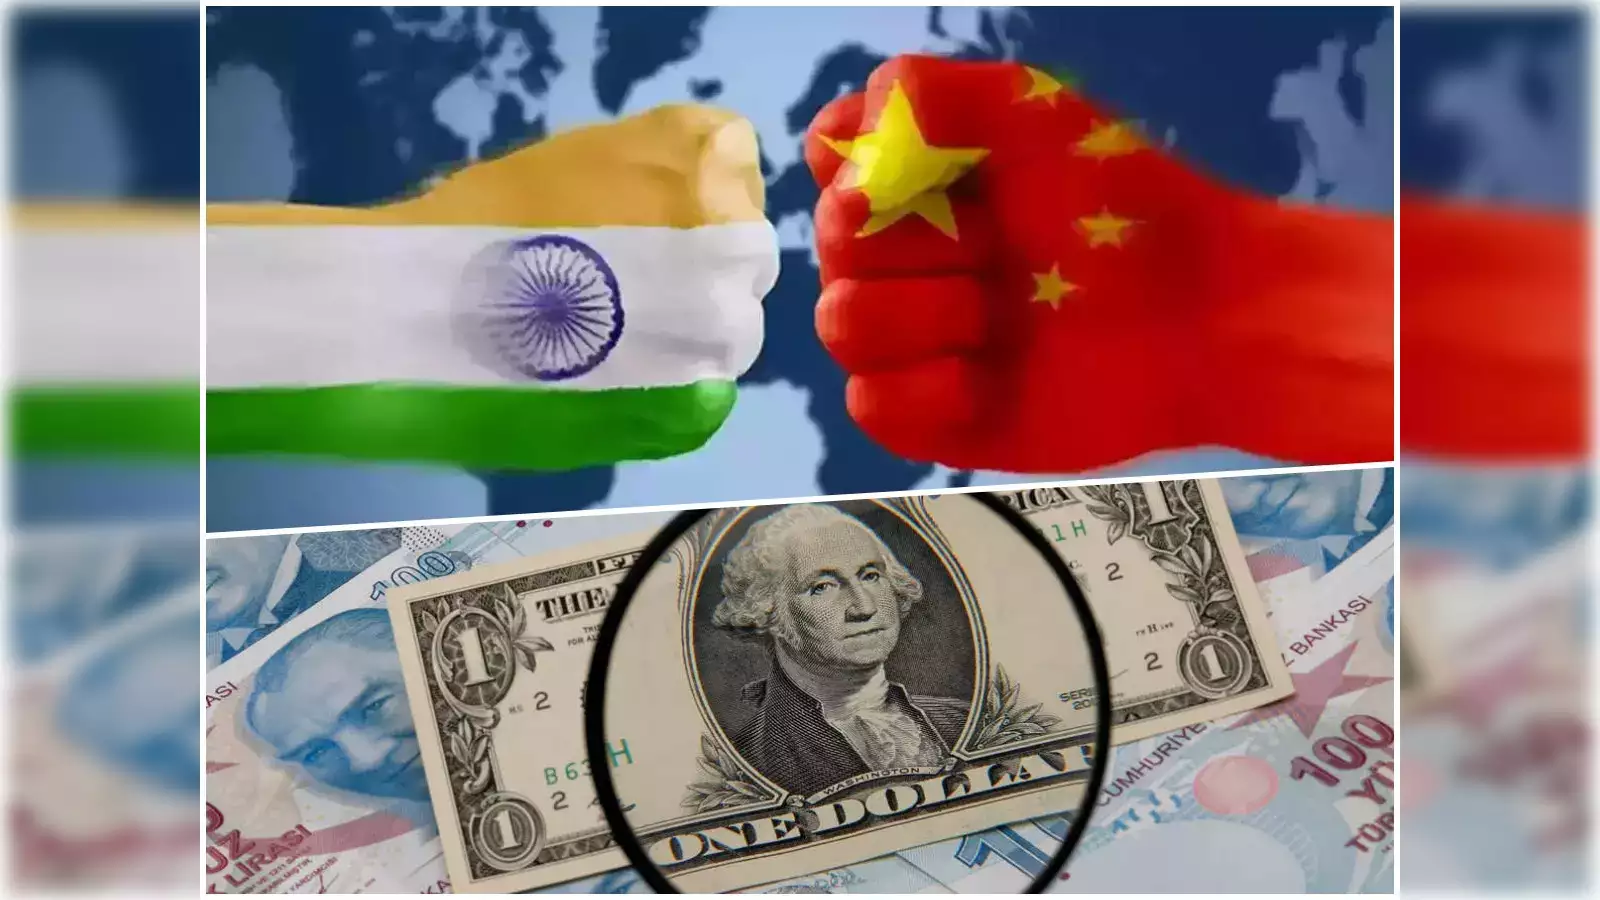 चीन में विदेशी निवेश कम होने से भारत को मिल रहा फायदा: संयुक्त राष्ट्र अधिकारी